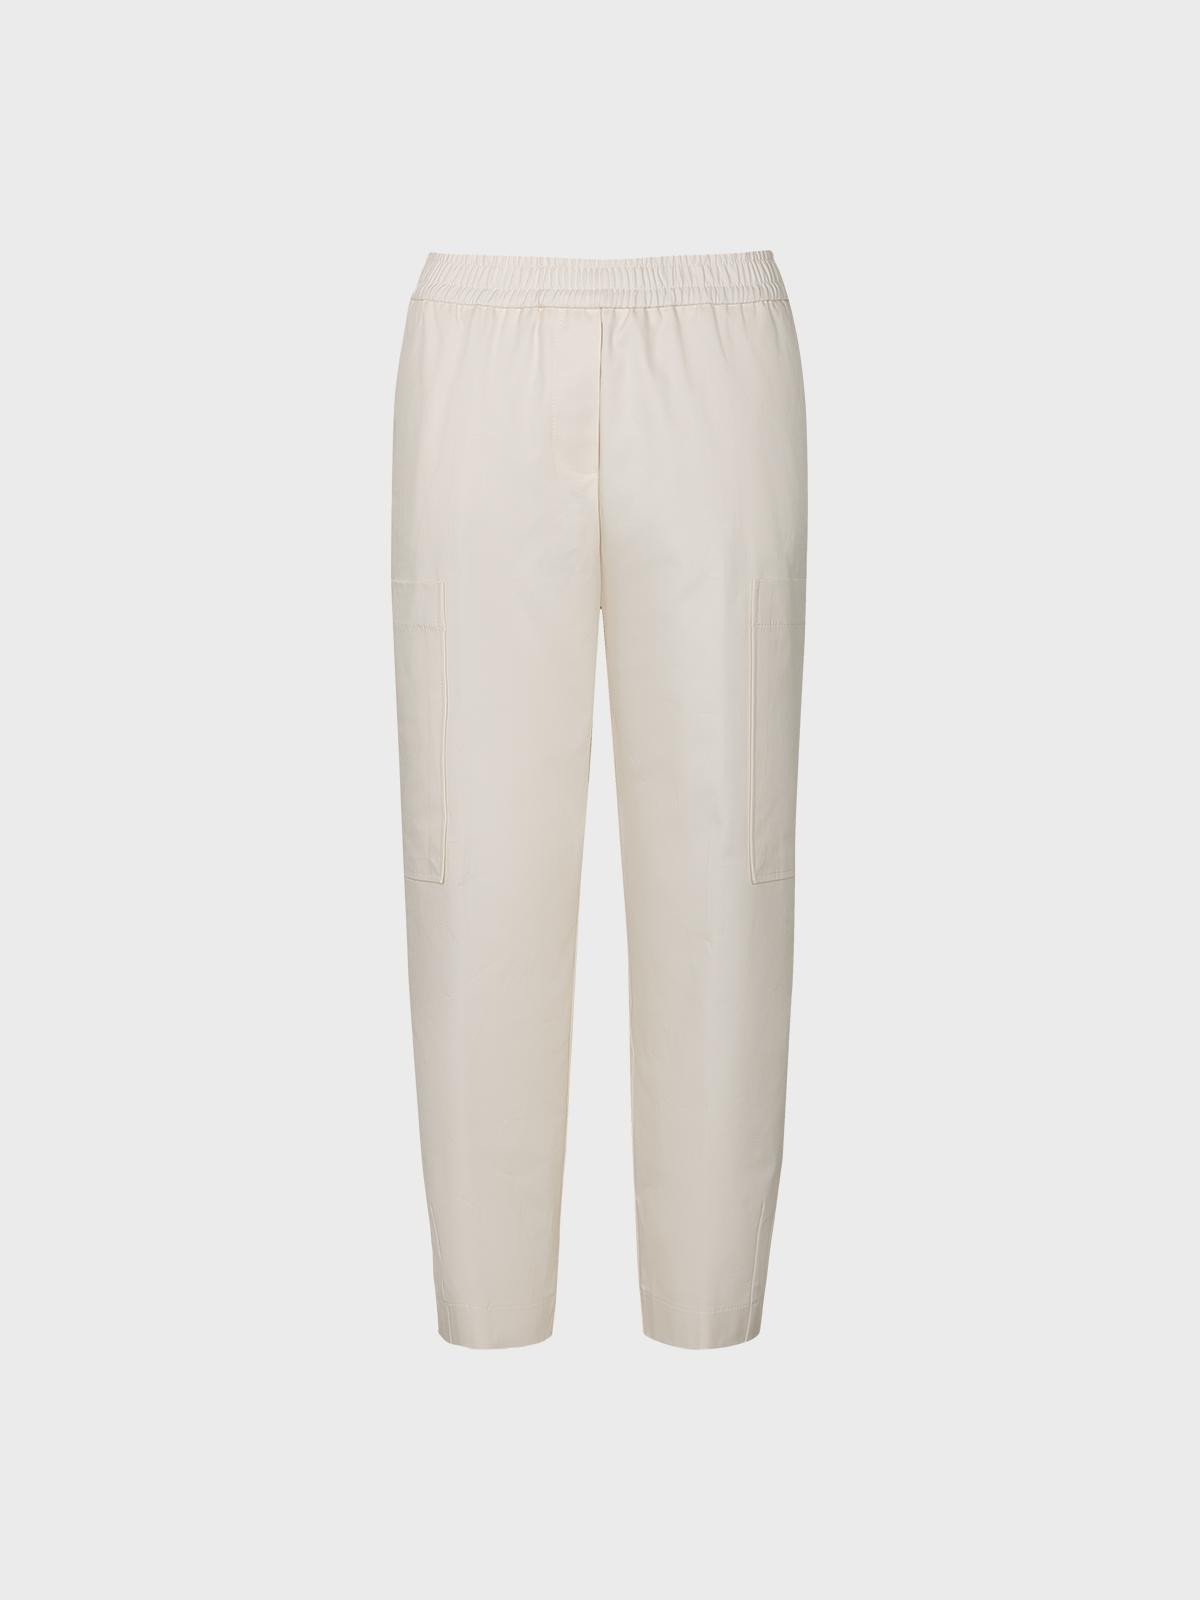 Pantalone cotton twill